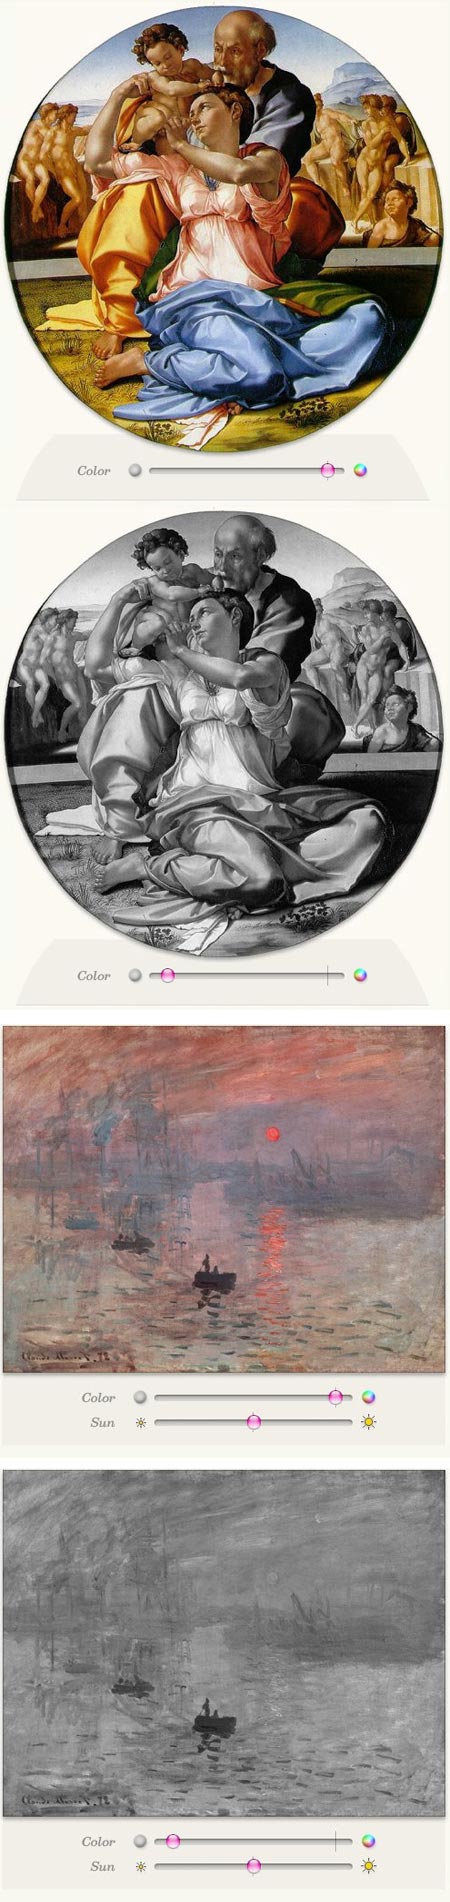 Michelangelo's Doni Holy Family, Monet's Impression: Sunrise, on WebExhibits